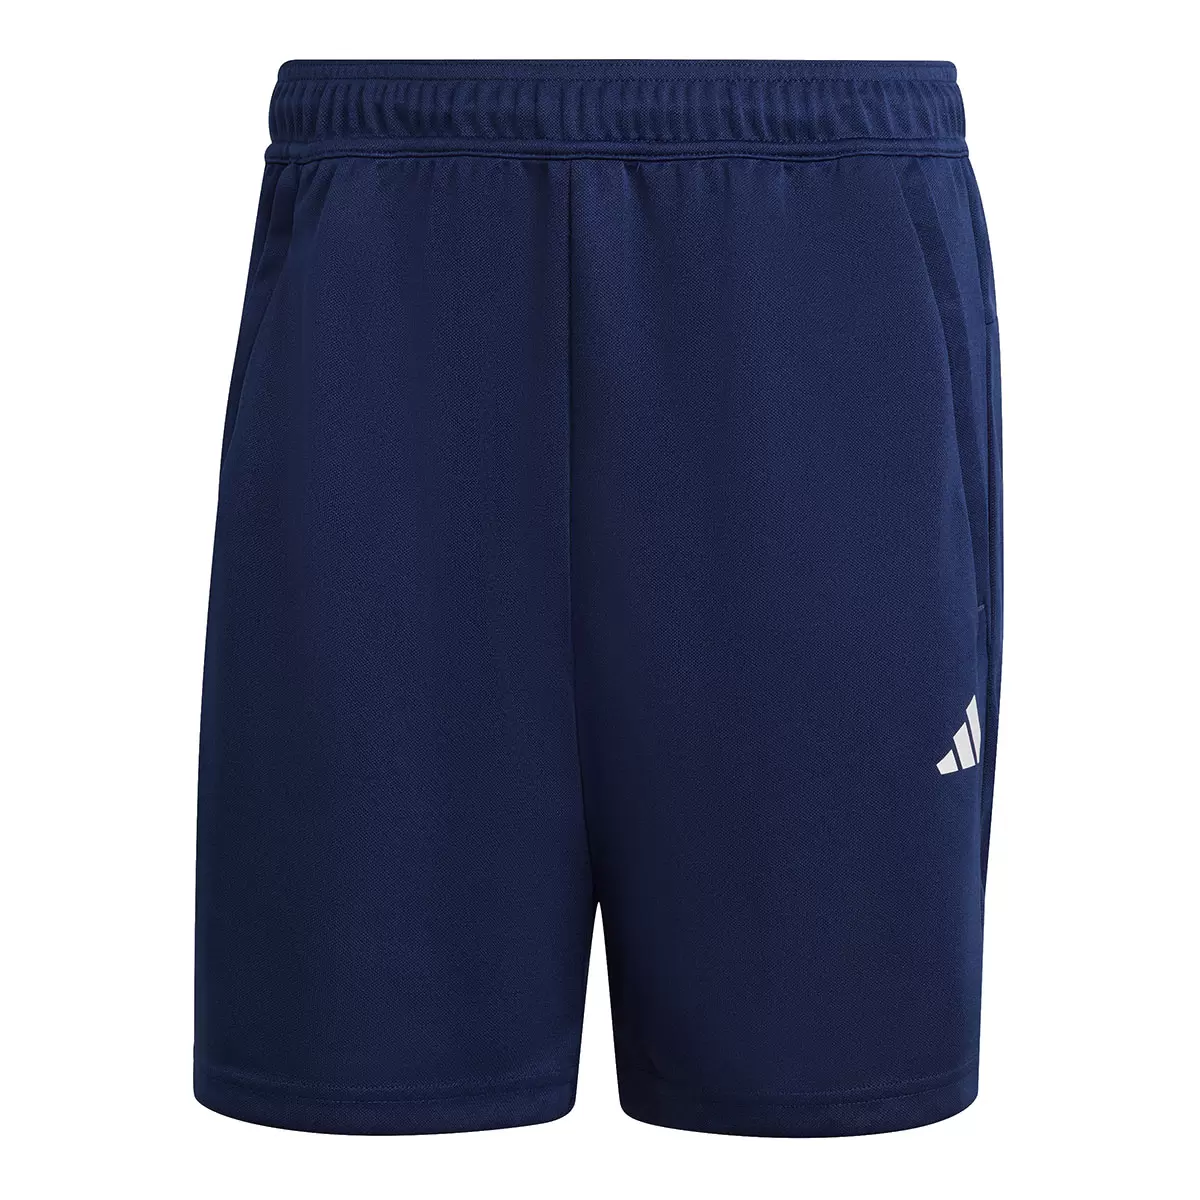 Adidas 男運動短褲 深藍 M